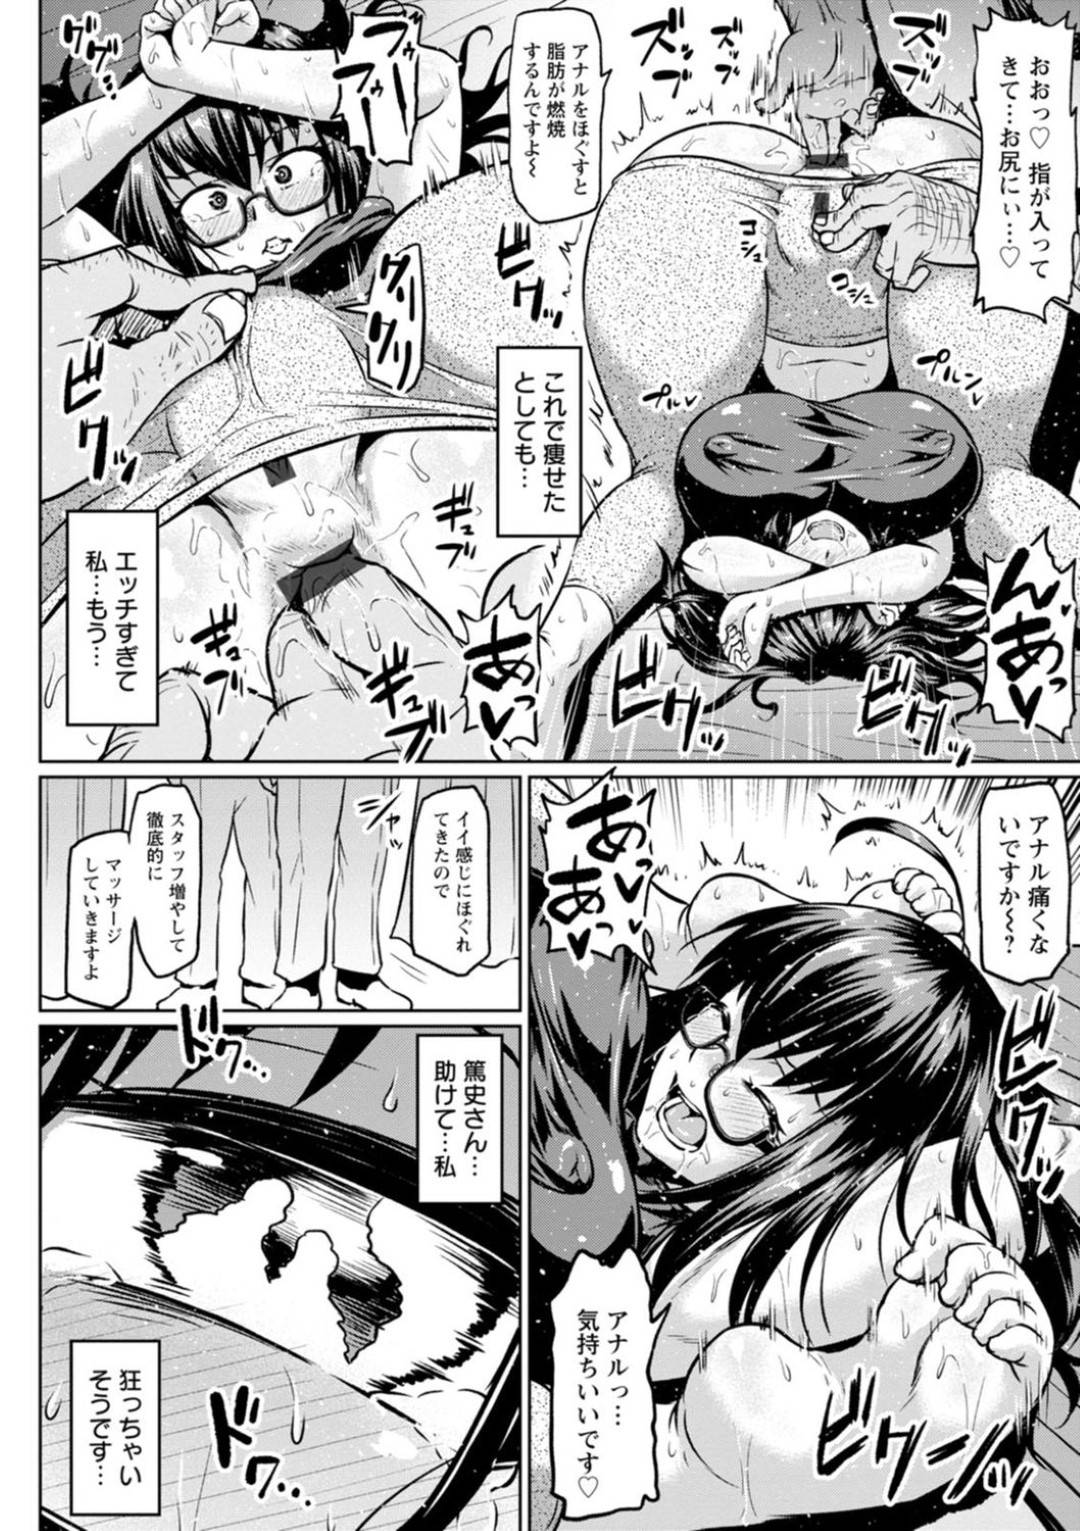 【エロ漫画】黒髪ロングの巨乳メガネ人妻は、ダイエット目的で行った整体でアナルをマッサージされ、潮吹きする…【アへ丸】